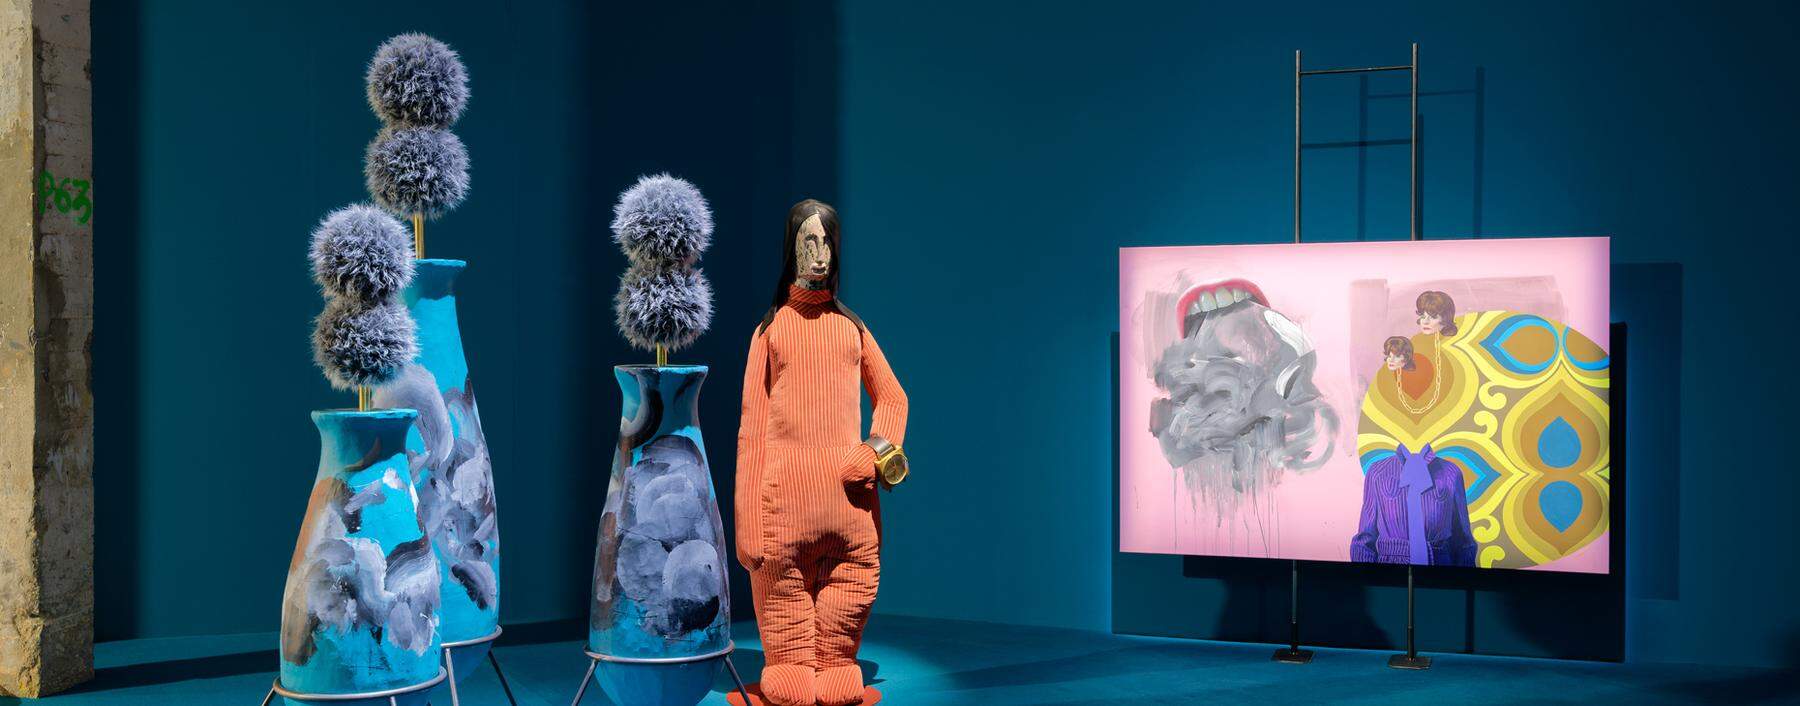 Generöse Raumwelten wie bei der Biennale 2022 schaffen Knebl und Scheirl auch im Palais de Tokyo.